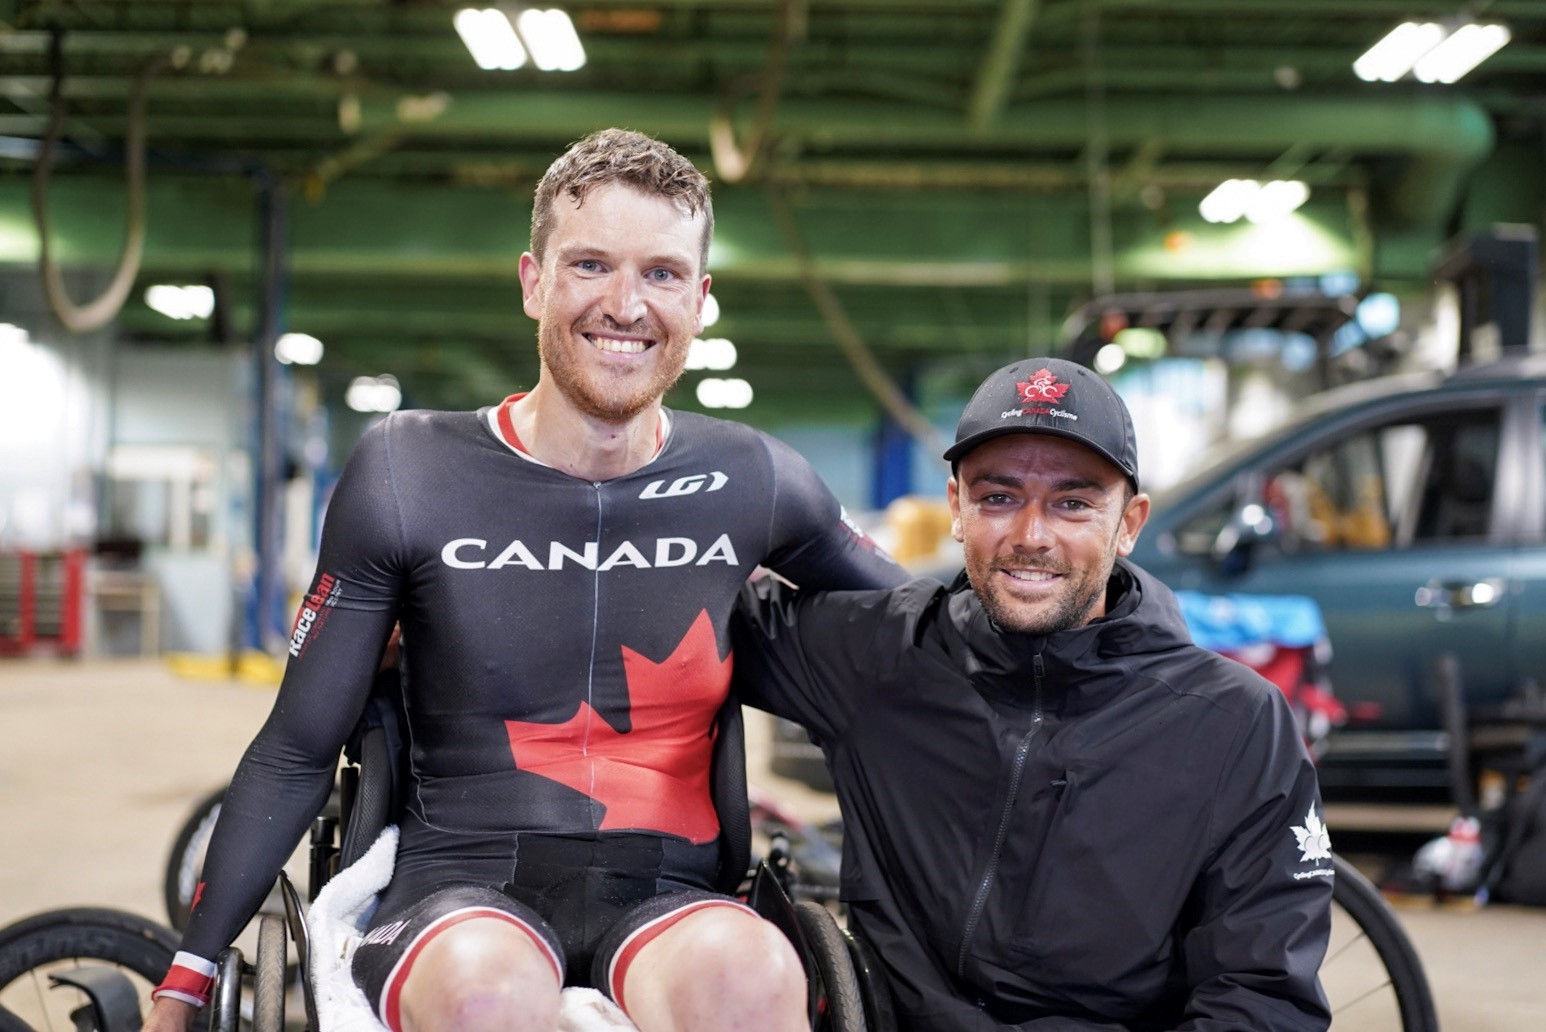 Matt with trainer, wearing team Canada gear, in wheelchair